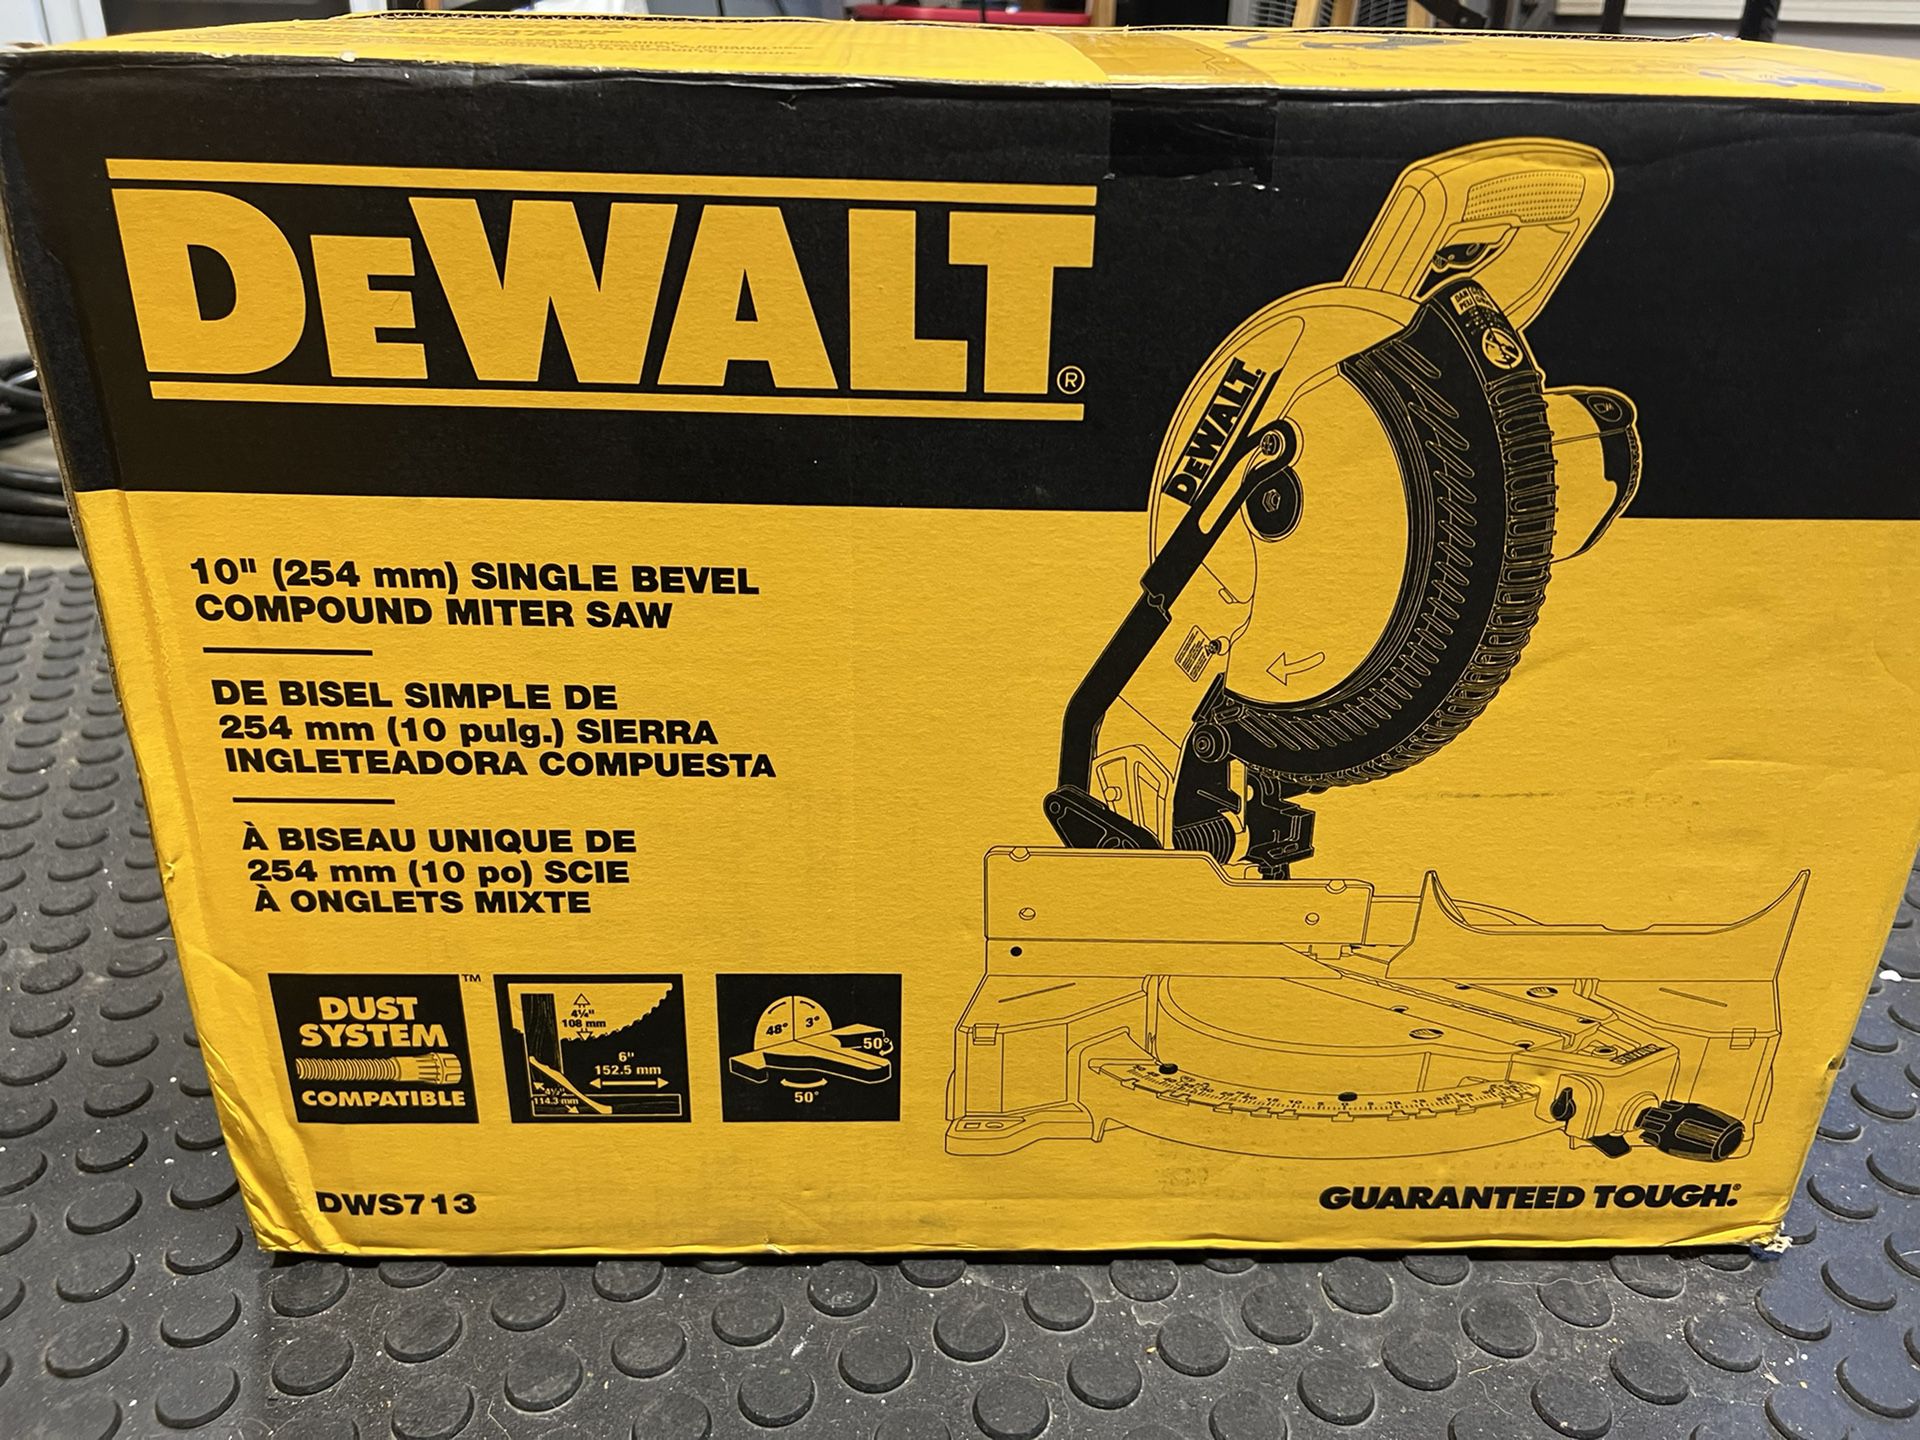 Dewalt Dws713 10” 15amp Corded Compound Miter Saw